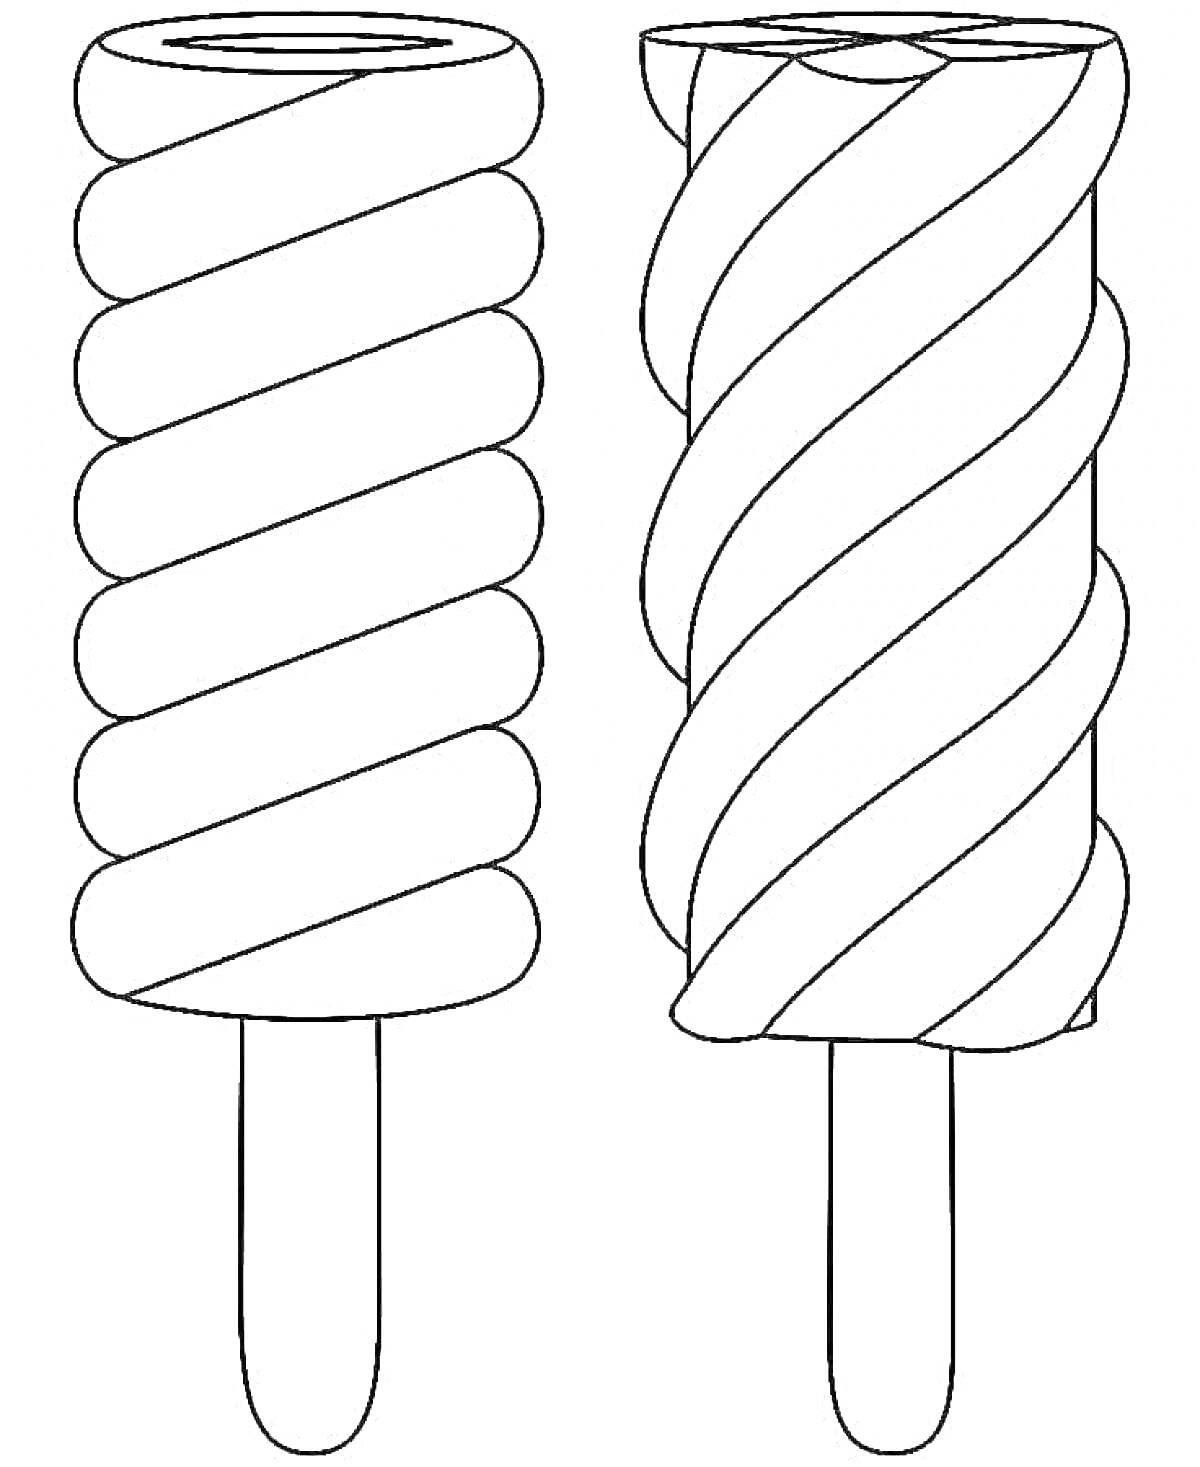 Раскраска Два эскимо на палочке с закрученными полосками